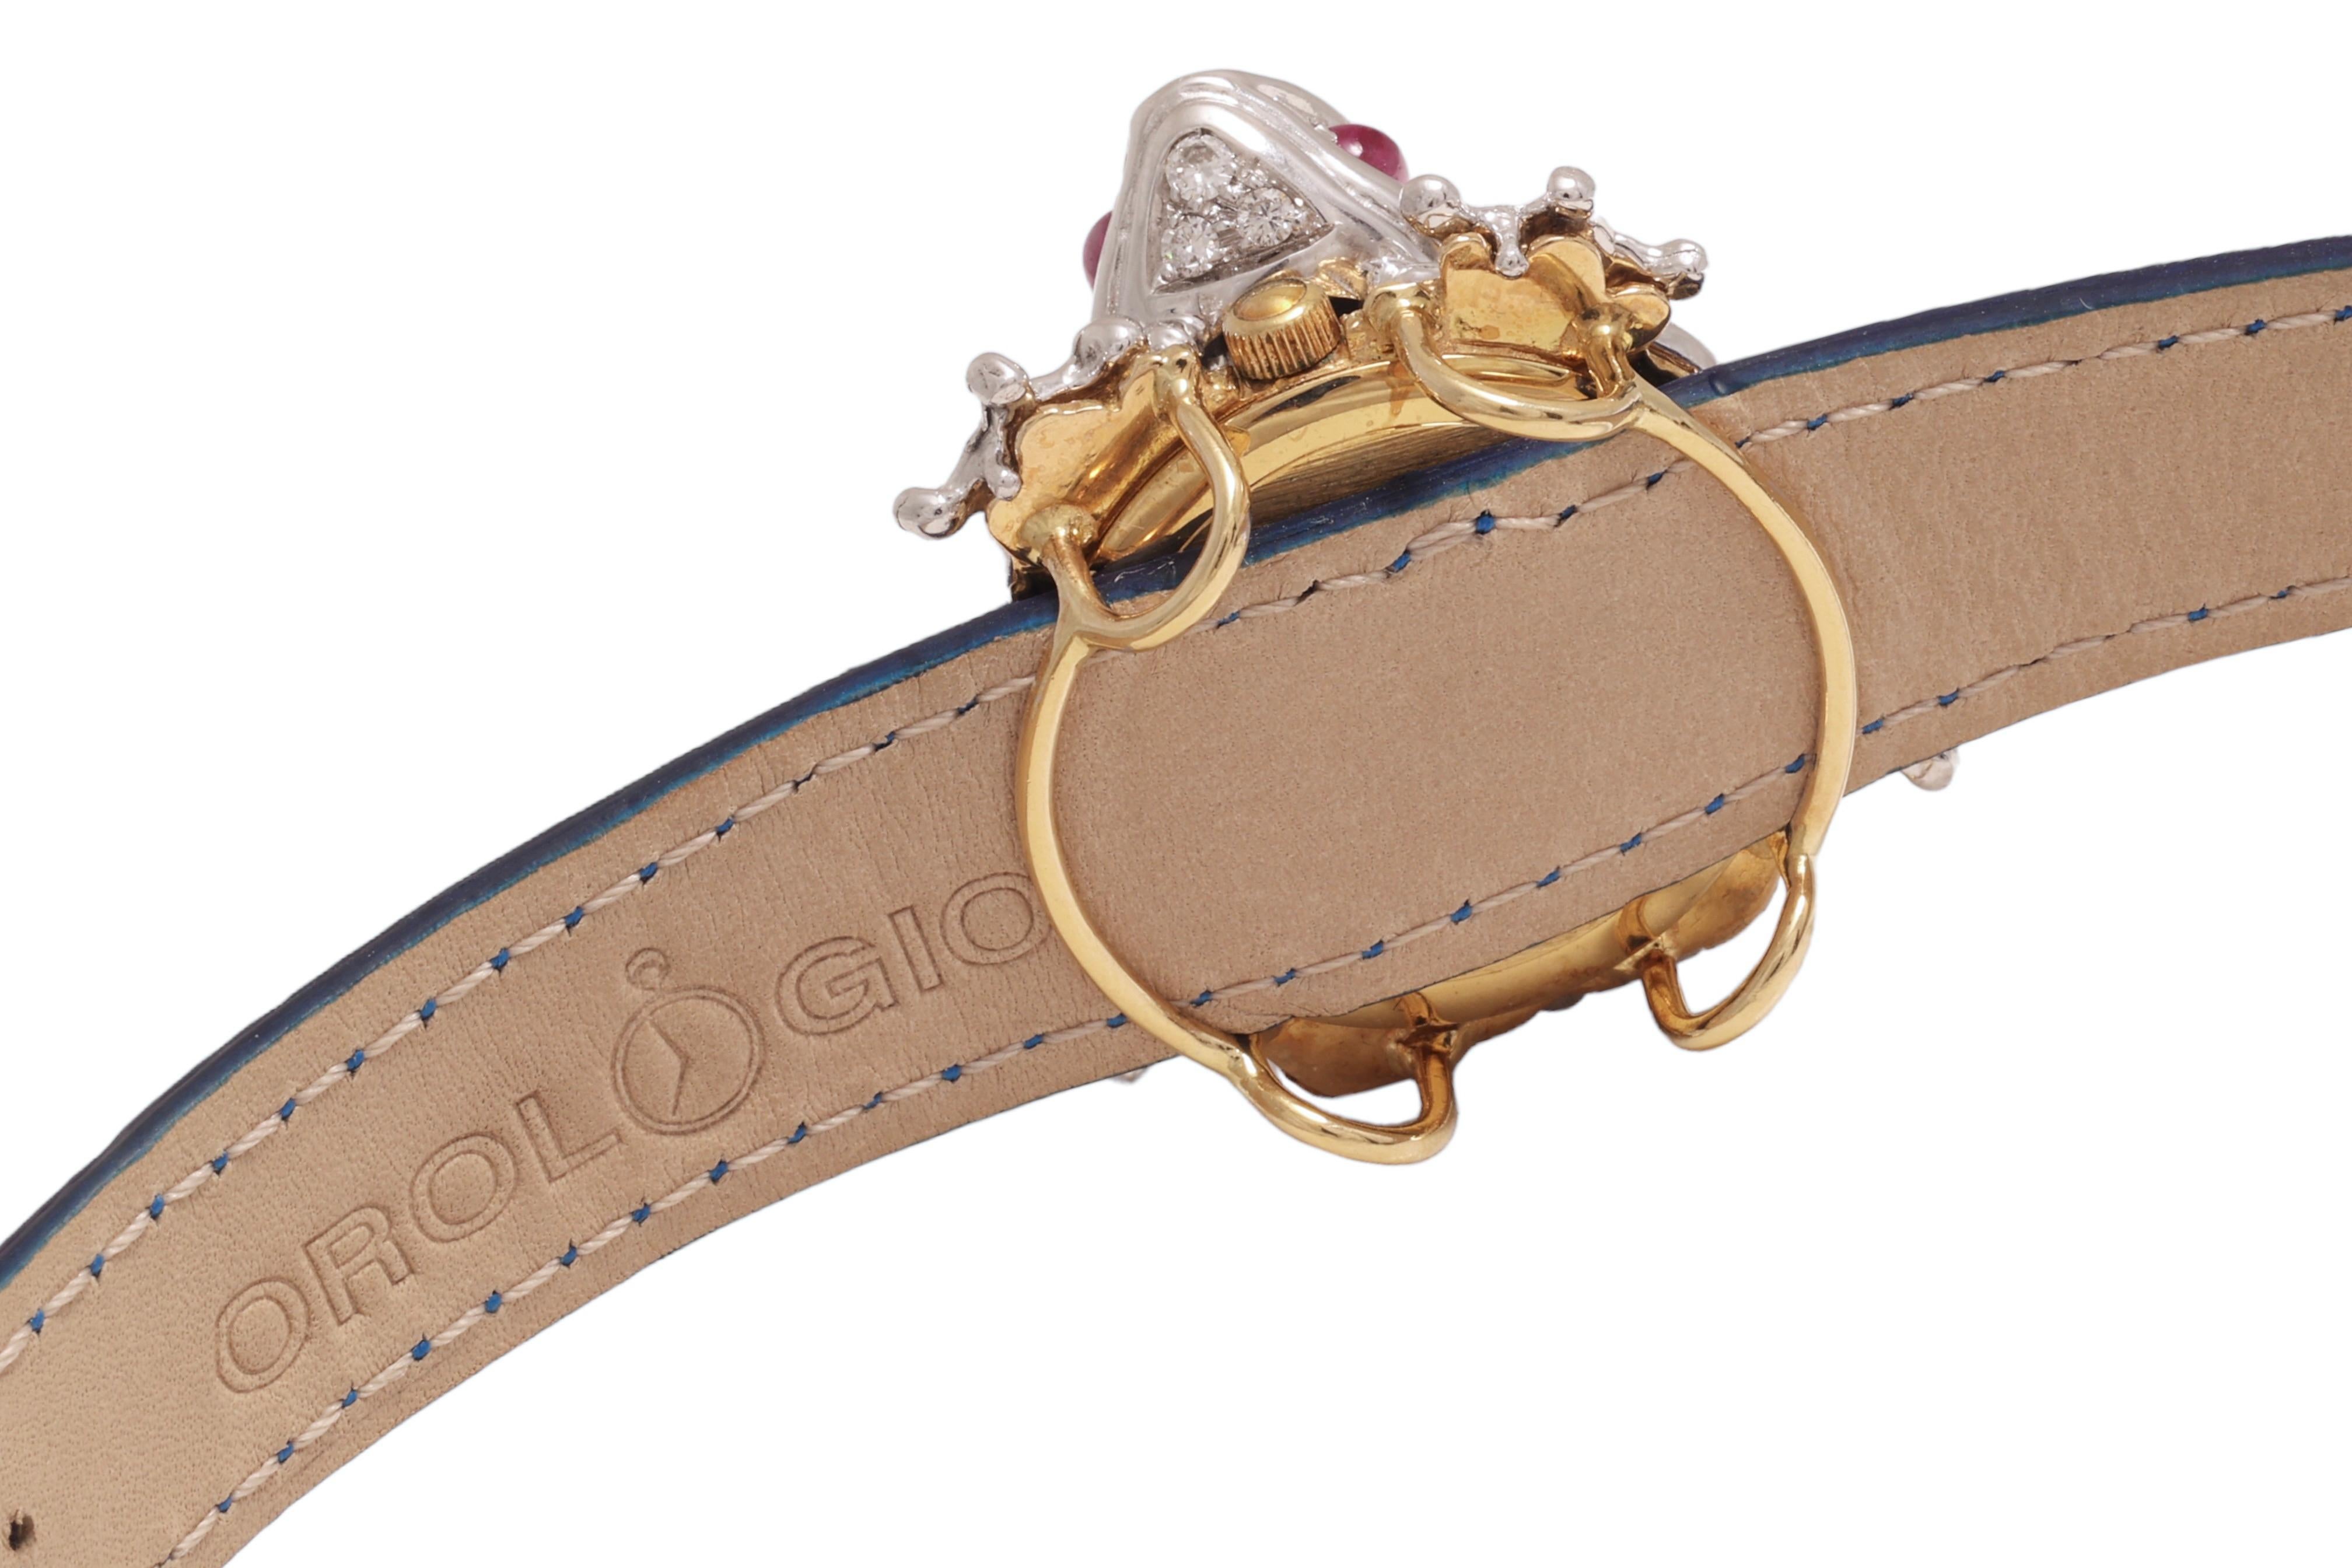 Zannetti Rana Scrigno Jewel Frog Wrist Watch / Bracelet, Diamonds & Ruby's For Sale 2